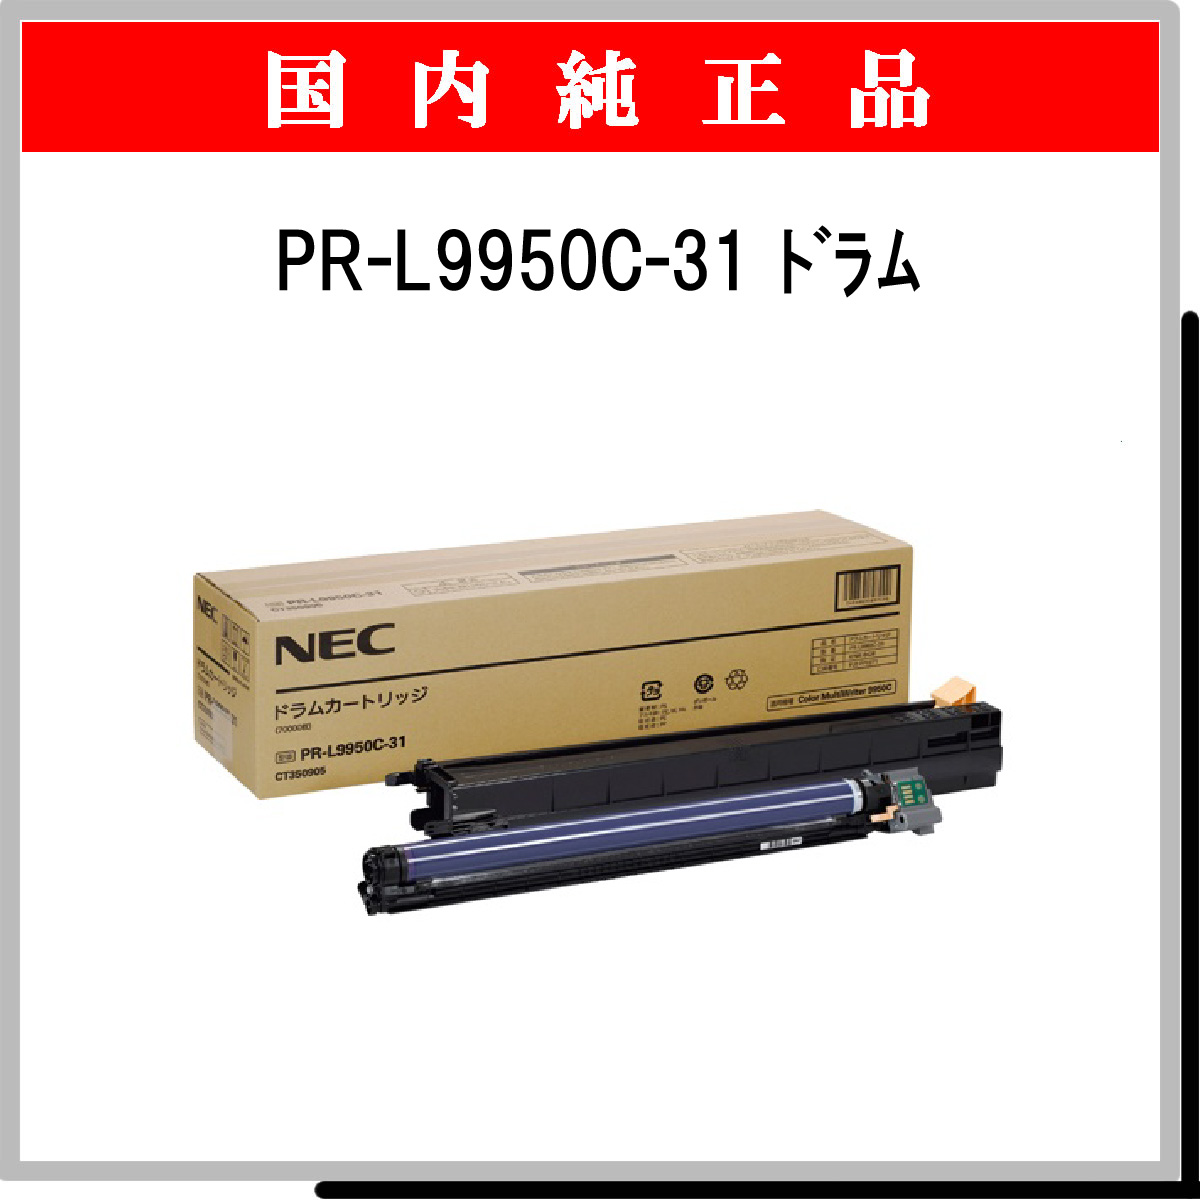 PR-L9950C-31 純正